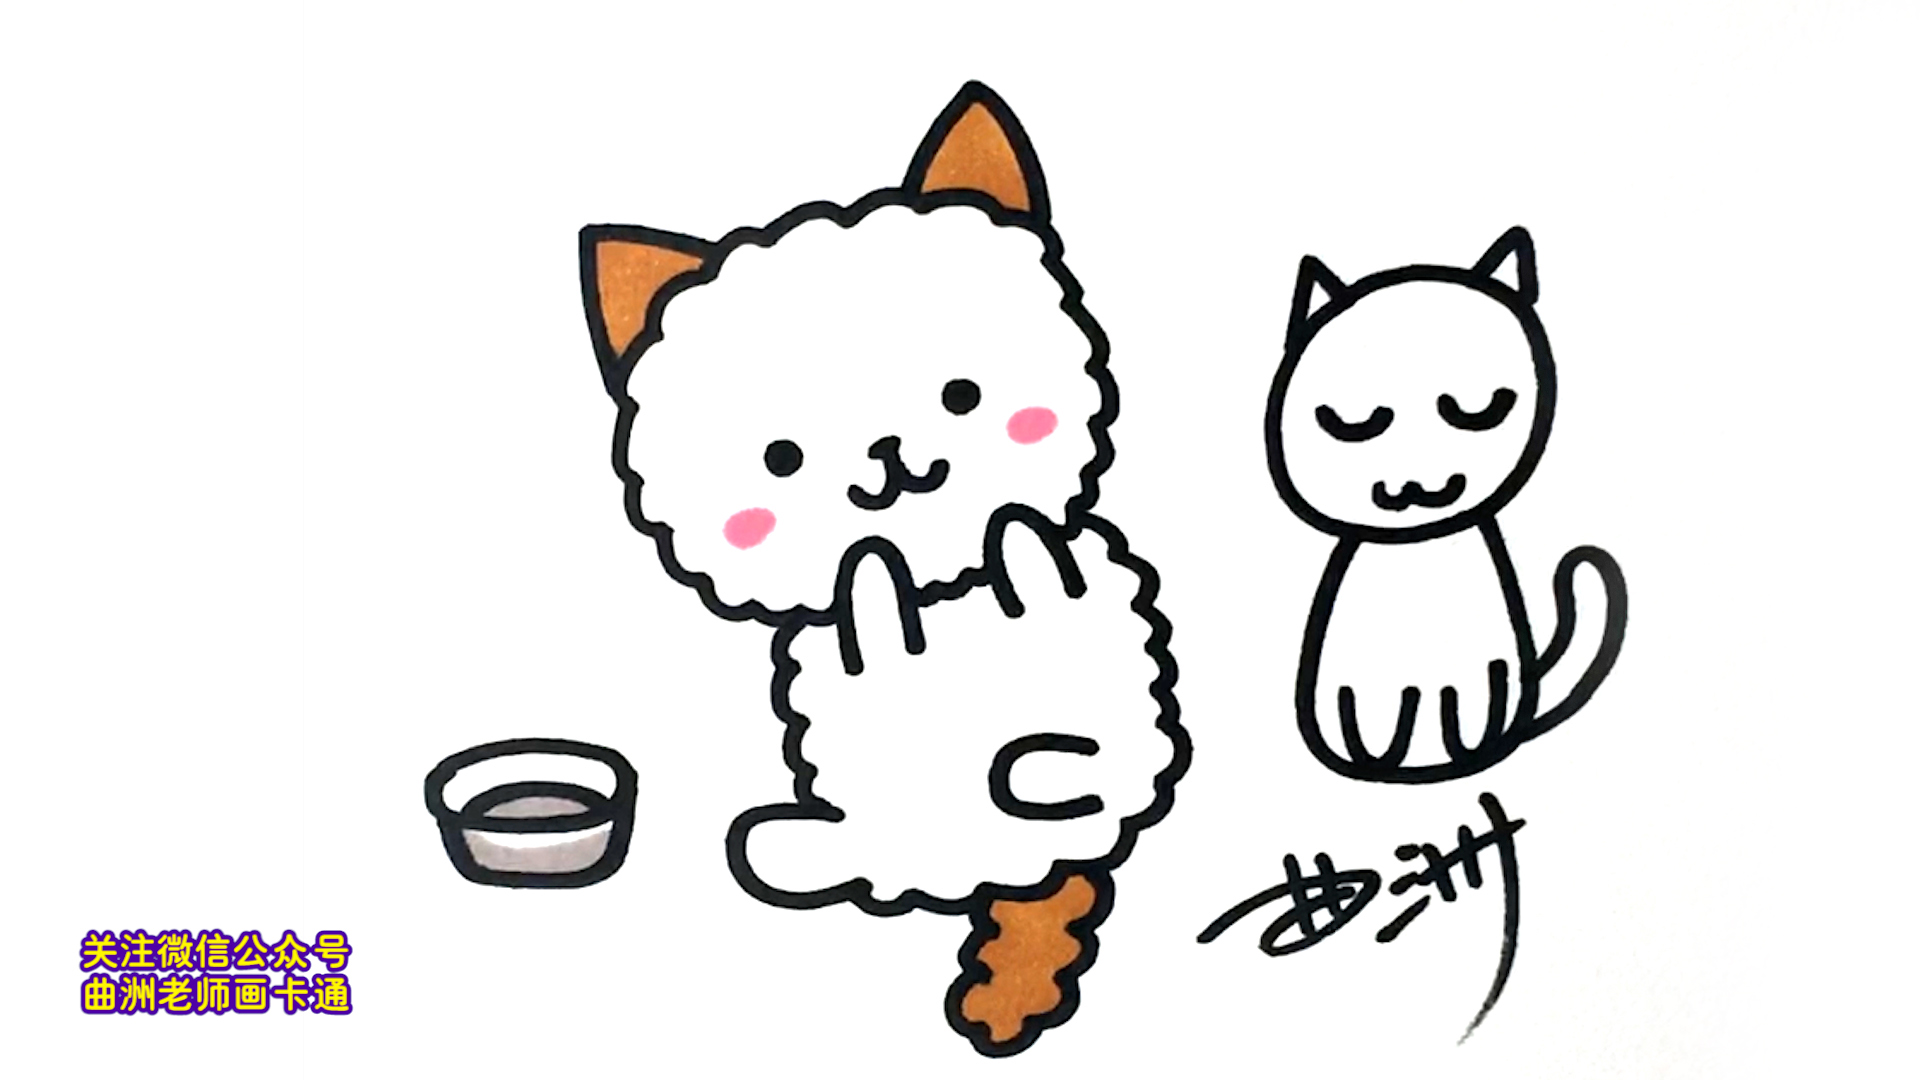 一分钟简笔画:二,三笔画出一只超级可爱的小猫